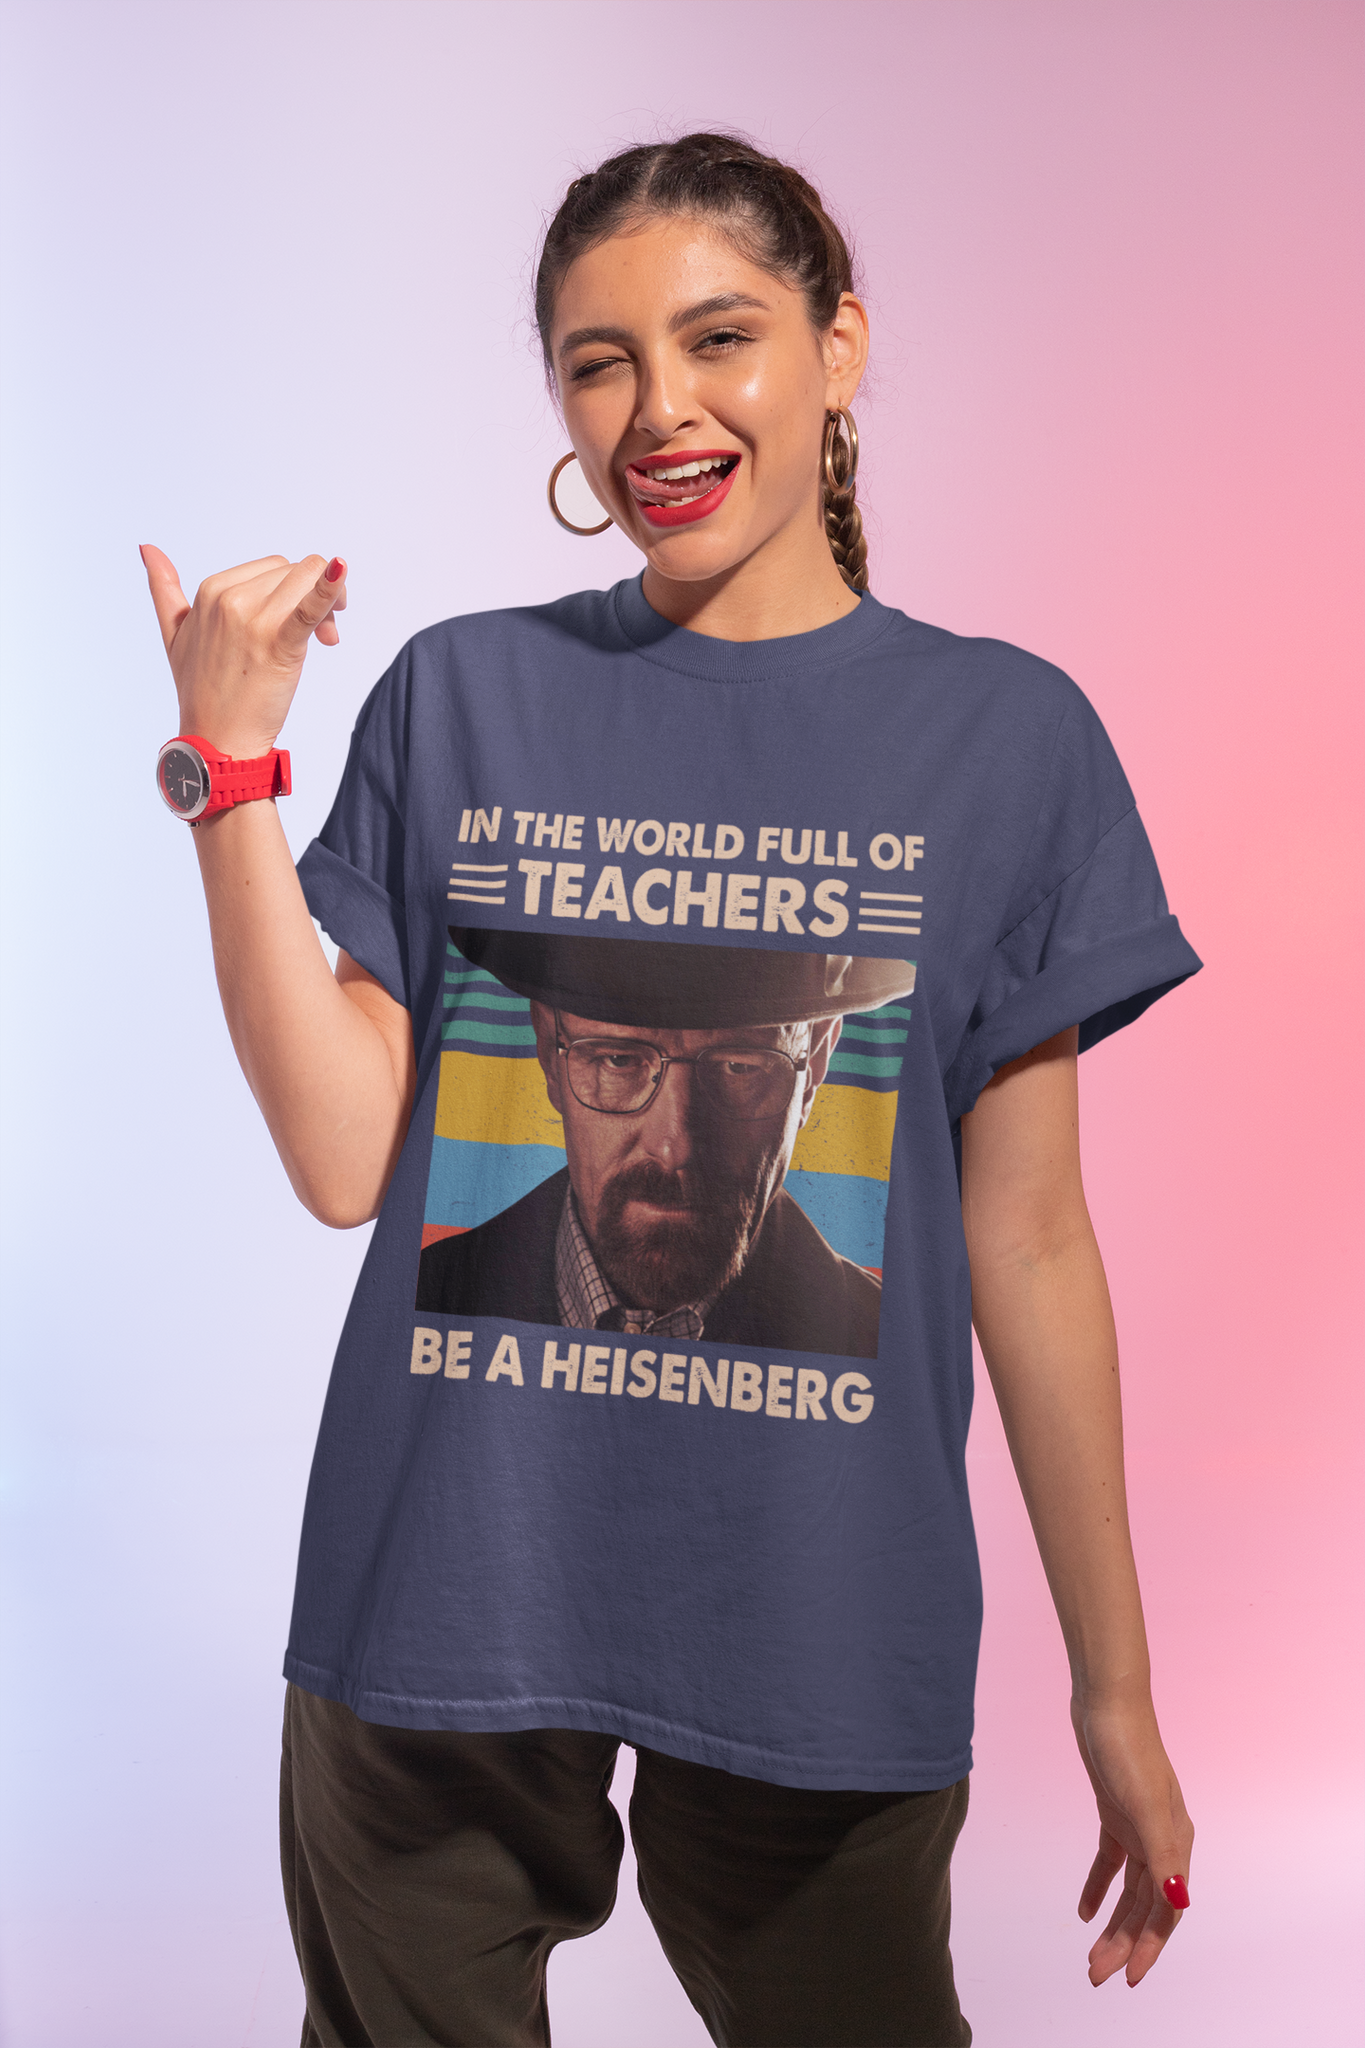 Breaking Bad Vintage T Shirt, Walter White T Shirt, In The World Full Of Teachers Be A Heisenberg Shirt